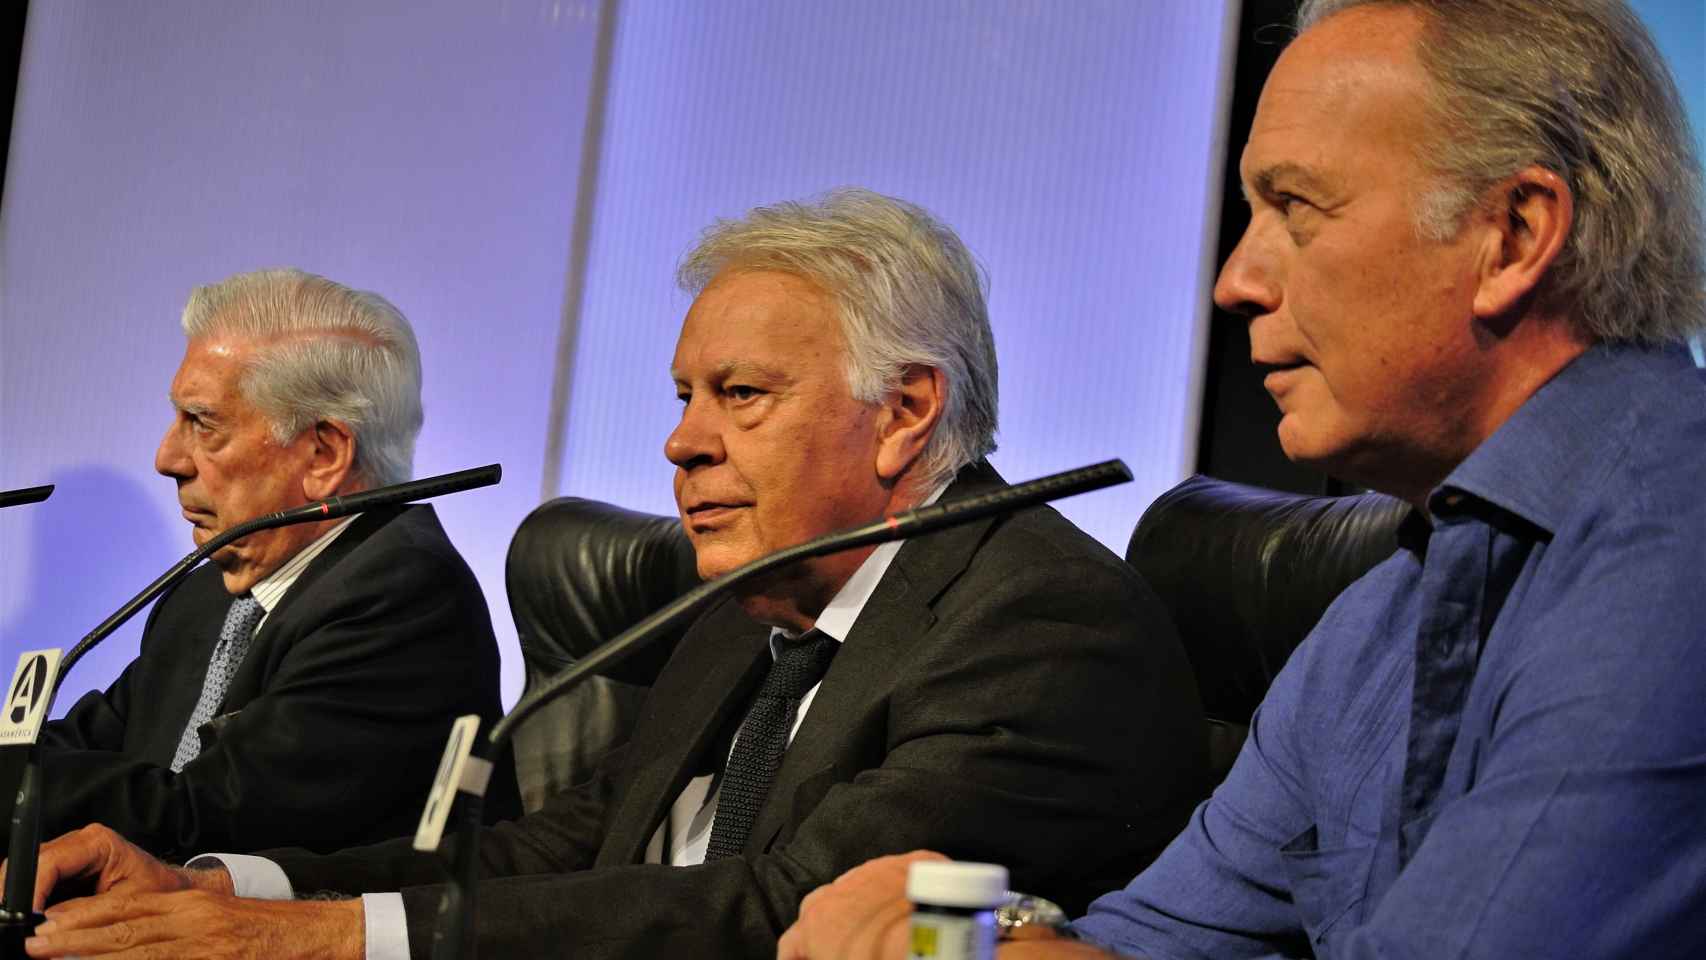 Mario Vargas Llosa, Felipe González y el moderador, Bertín Osborne, en el XII Foro Atlántico, en la Casa de América.